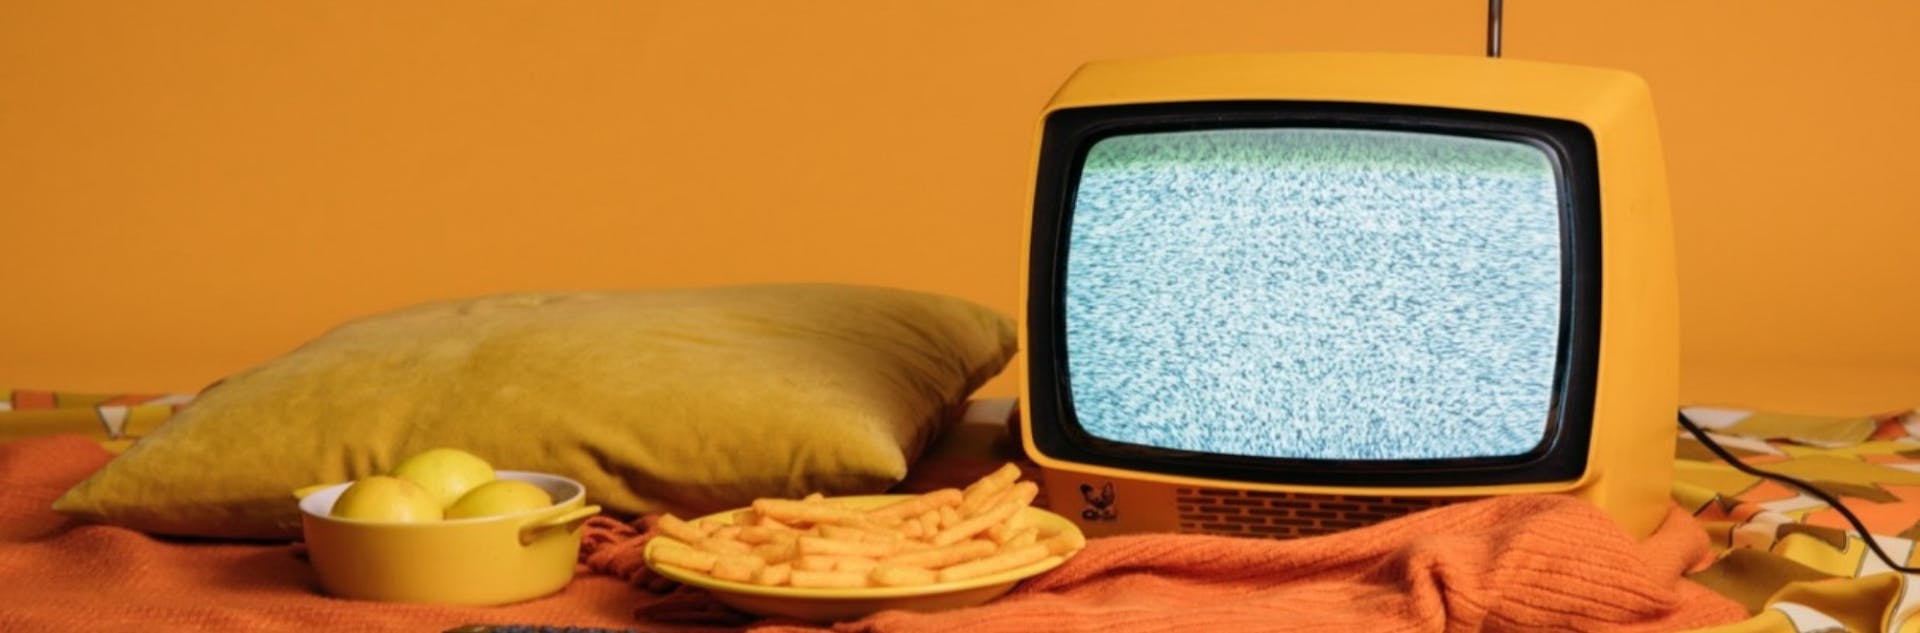 ¿Cuál es la historia de la televisión? Descubre cómo impactó a nivel mundial y qué futuro le espera